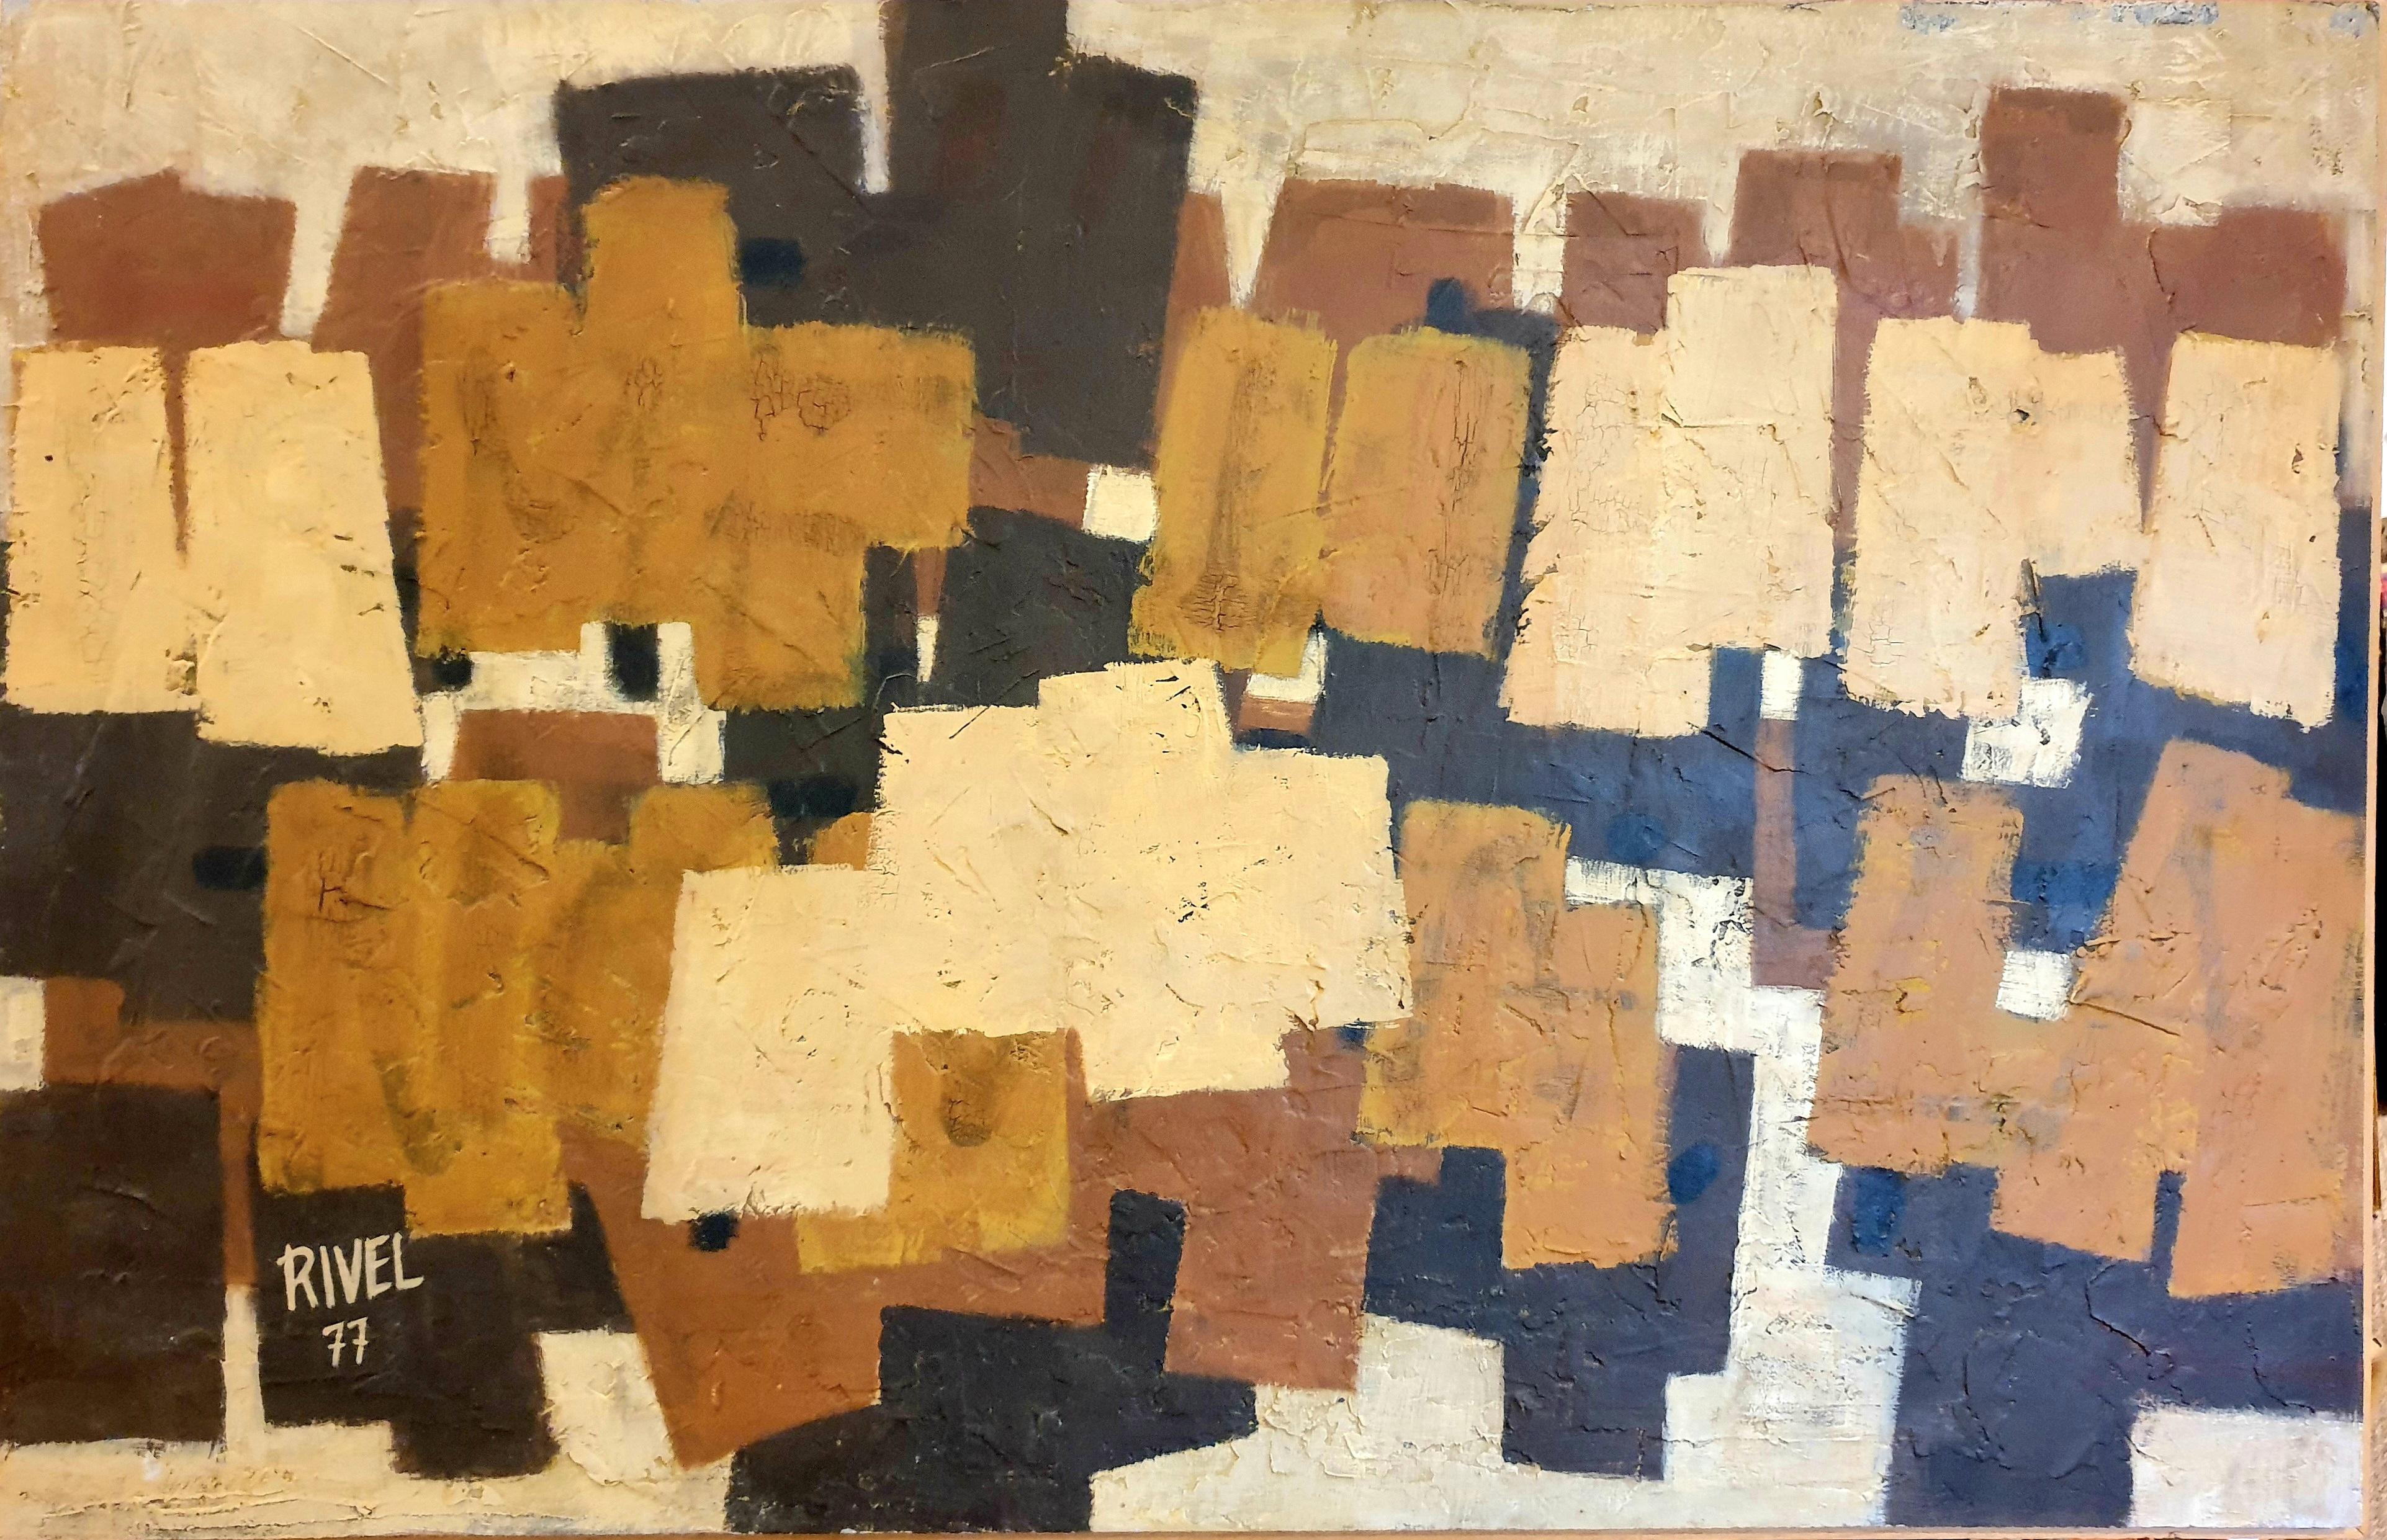 Rivel Abstract Painting - Large Geometric Abstract. 'Traces No.9 Pour une Archéologie du Présent.'